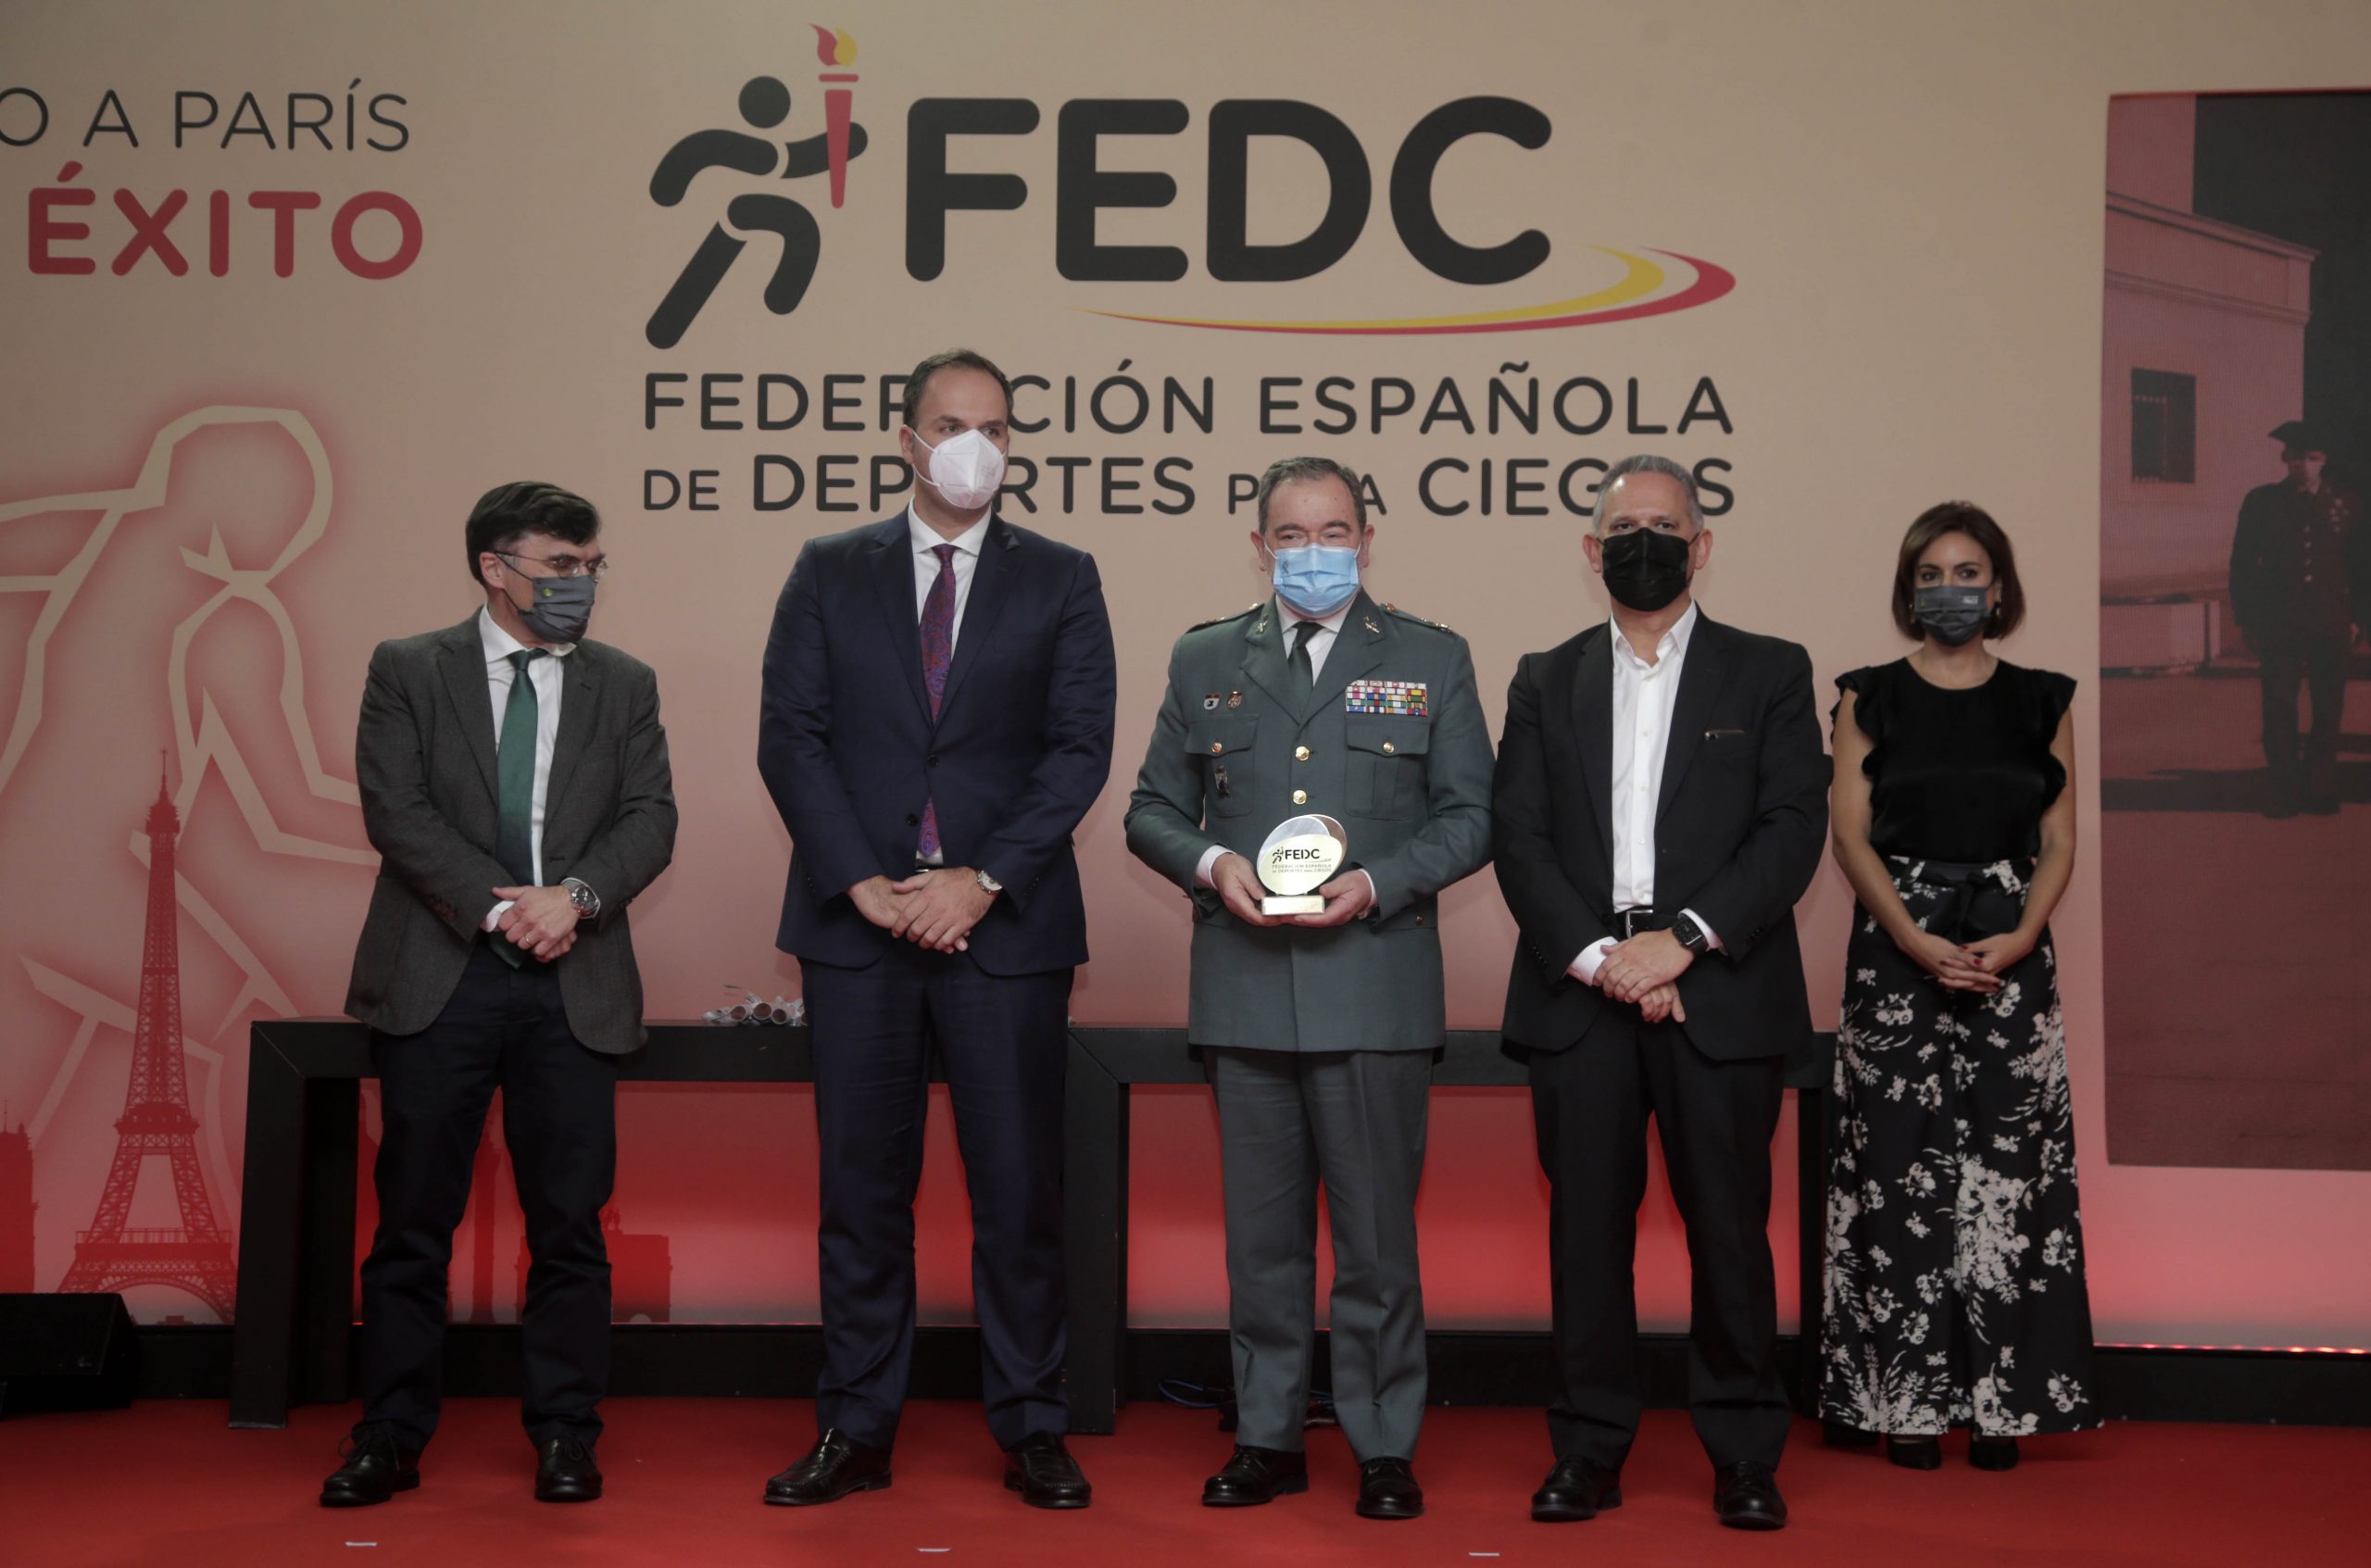 Guardia Civil. Fuente: Federación Española de Deportes para Ciegos